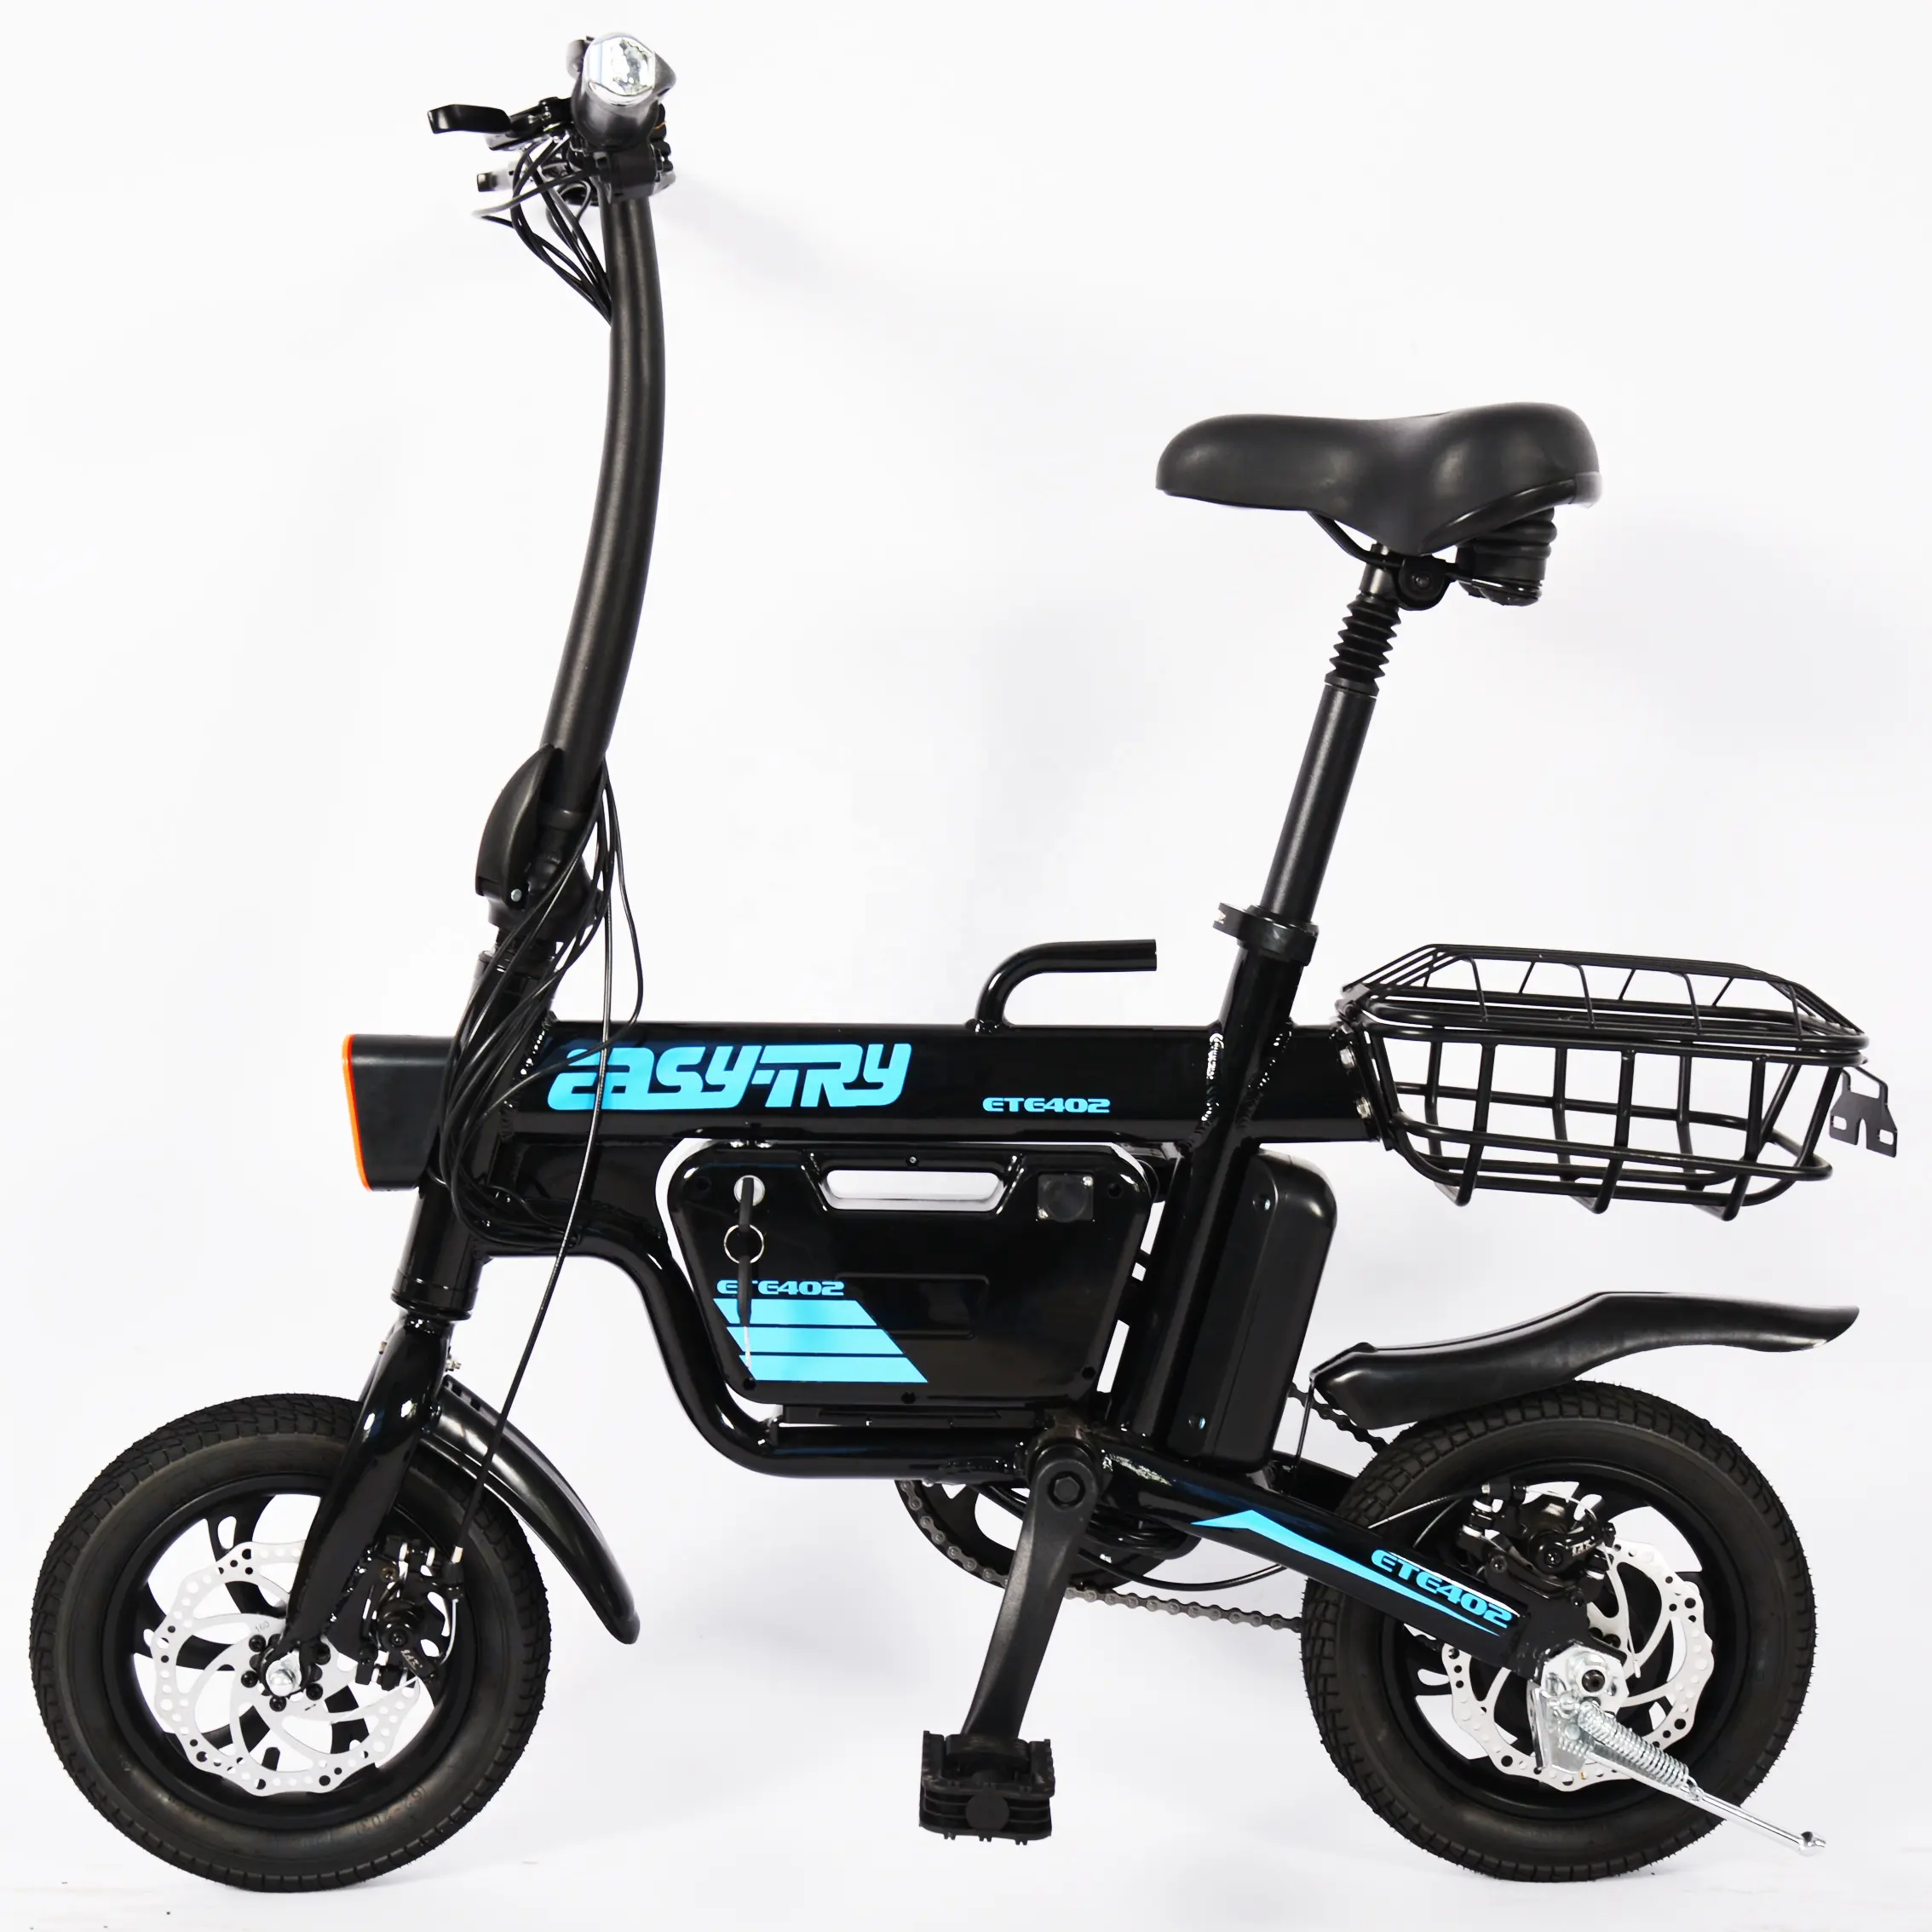 Richbit — vélo électrique pour vélo, modèle rétro, usine chinoise, 2019